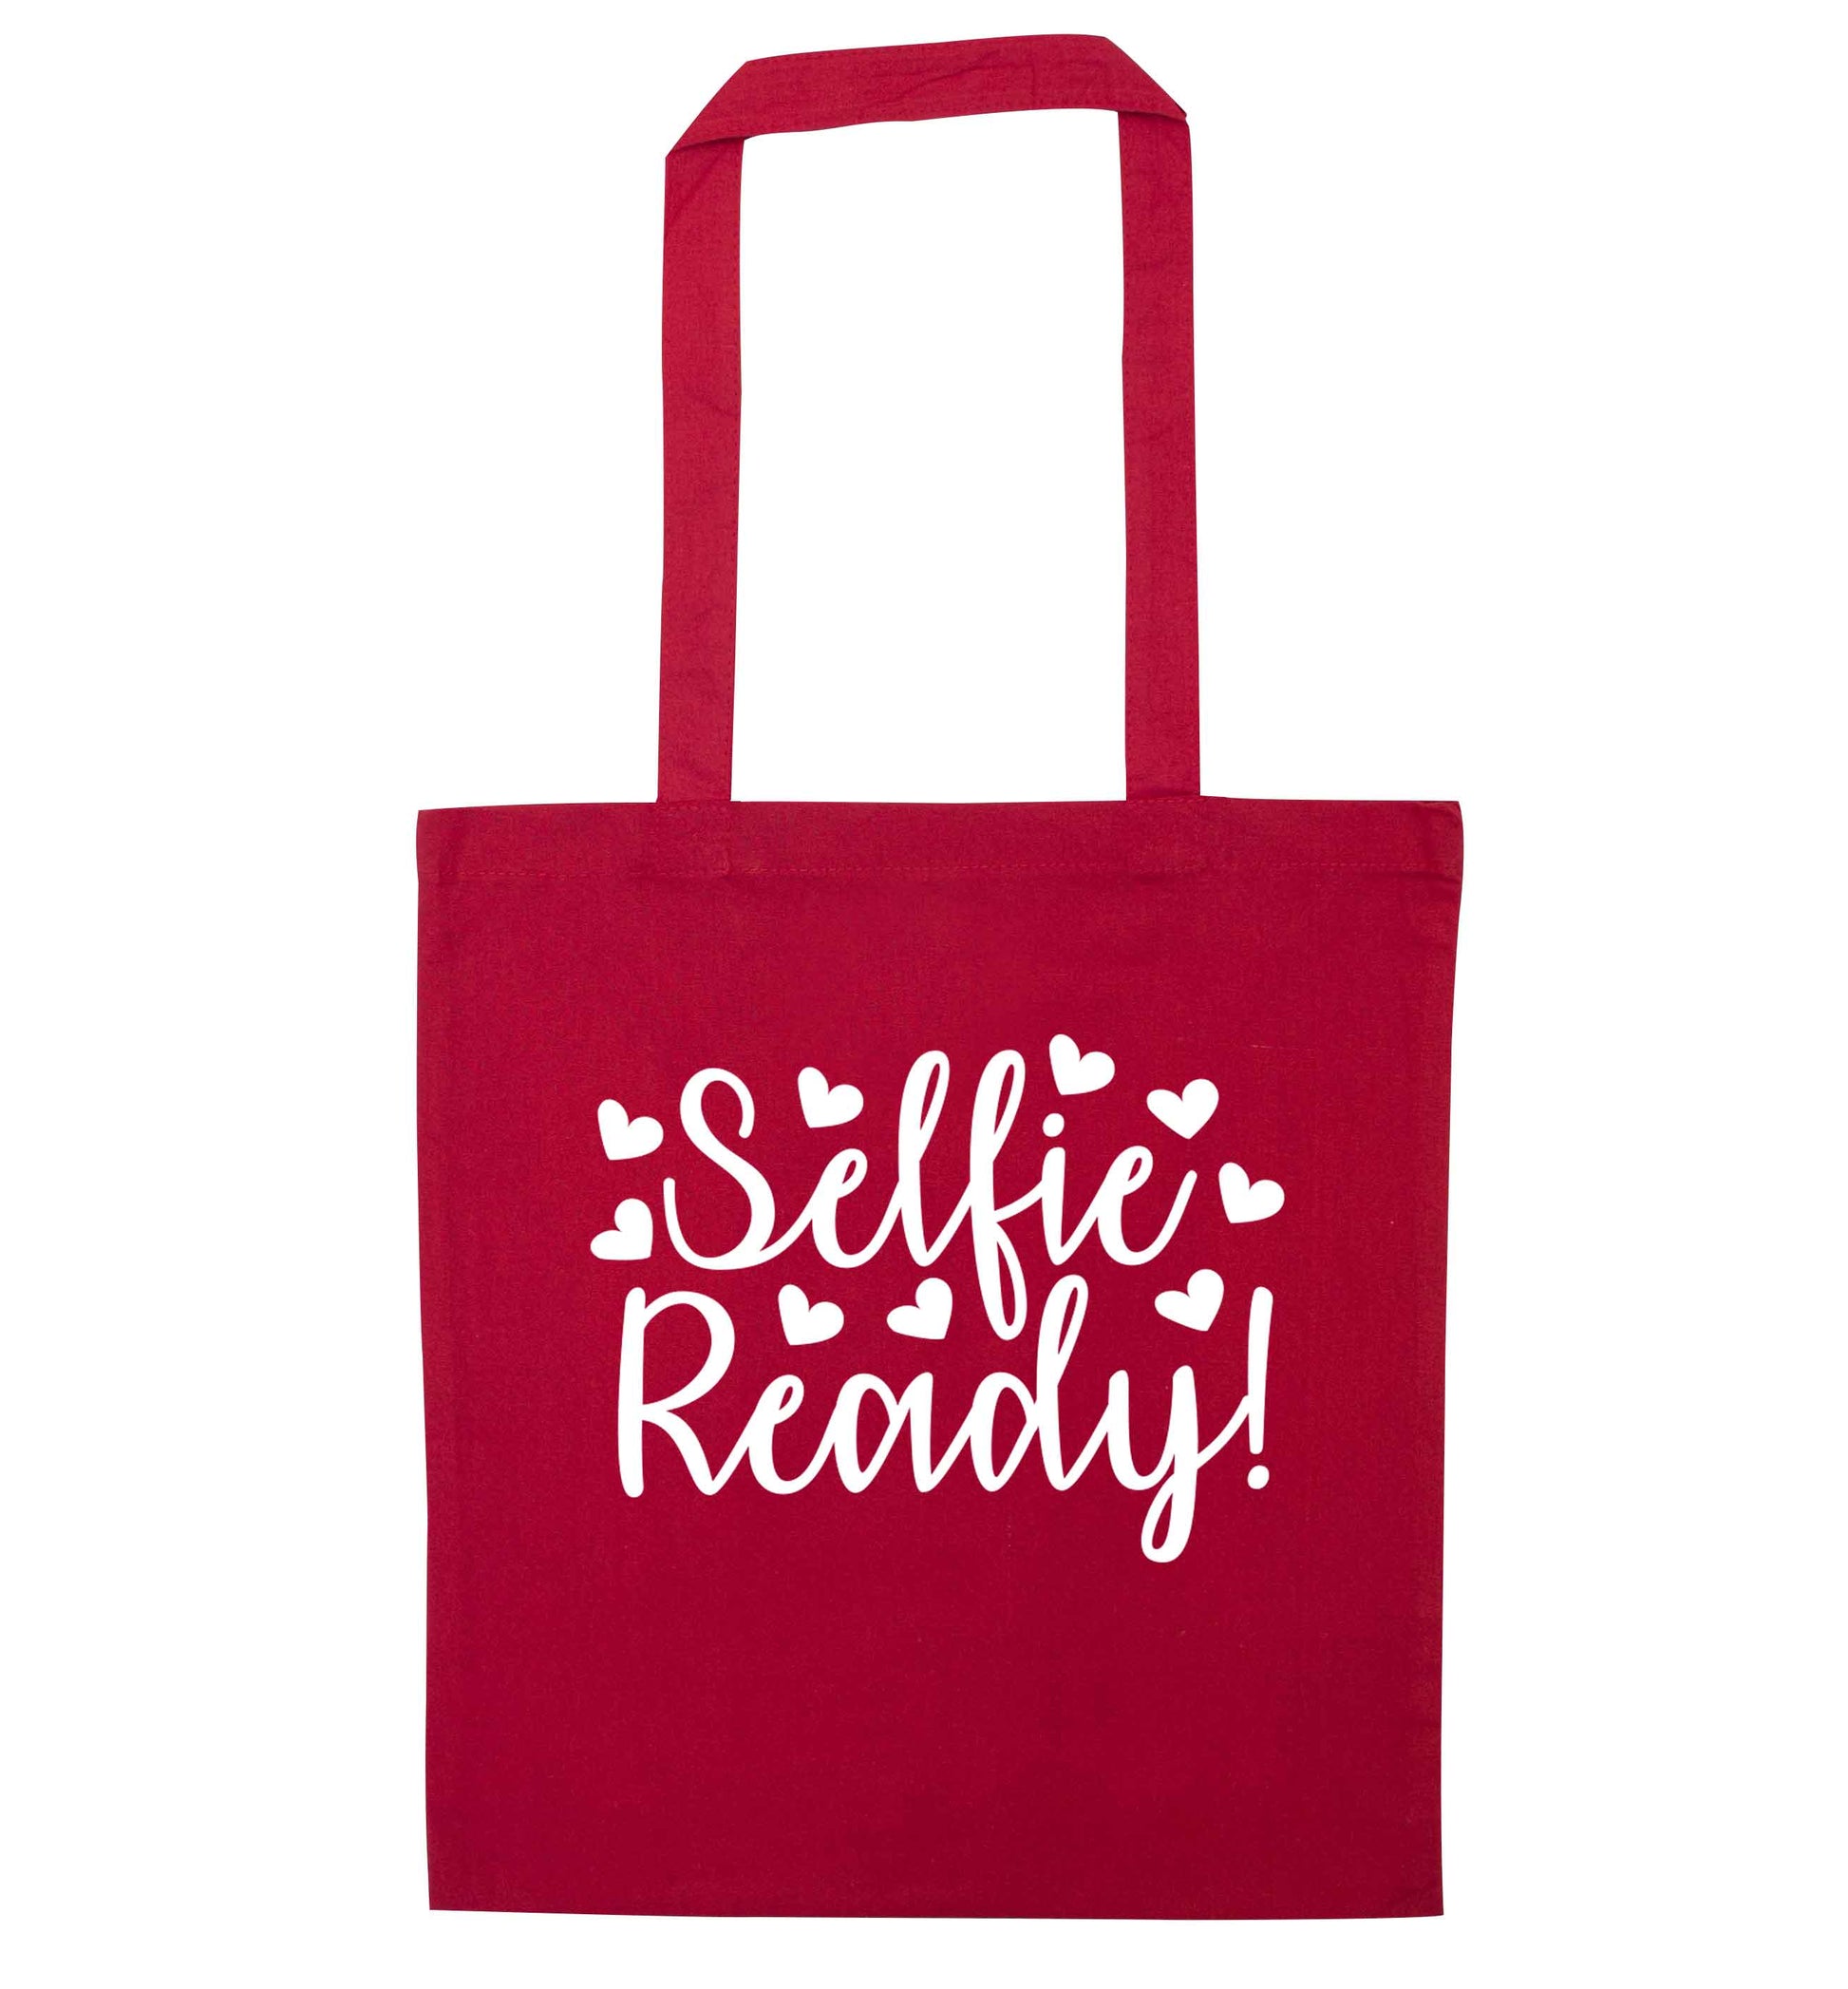 Selfie ready red tote bag